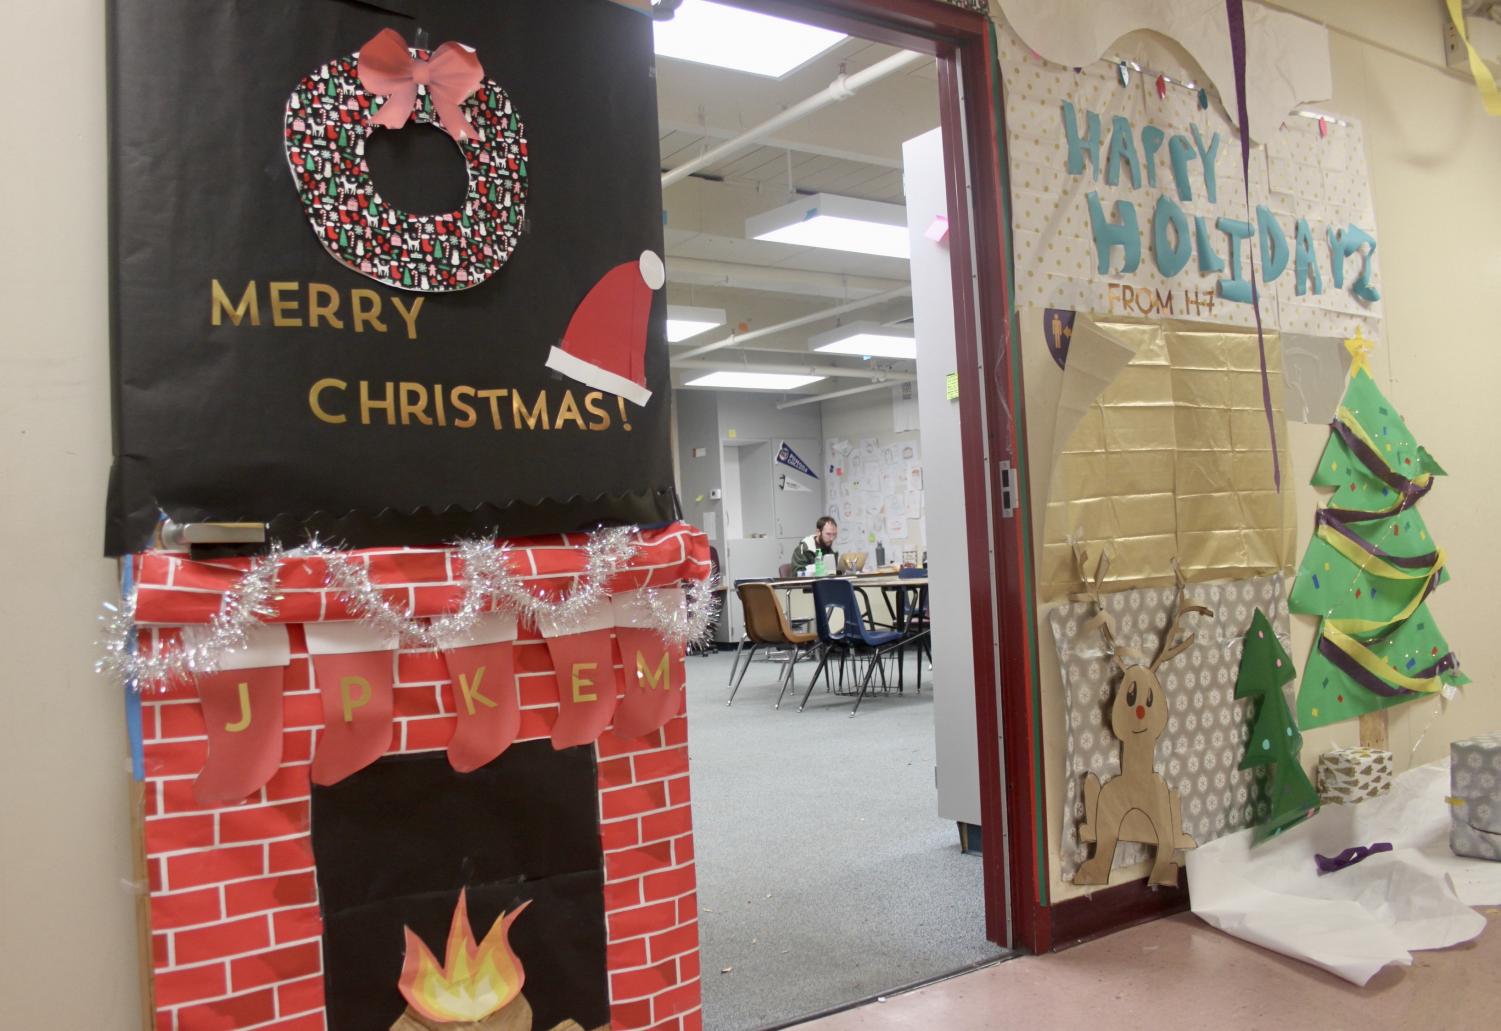 Amador+classrooms+show+holiday+spirit+through+their+door+decorations